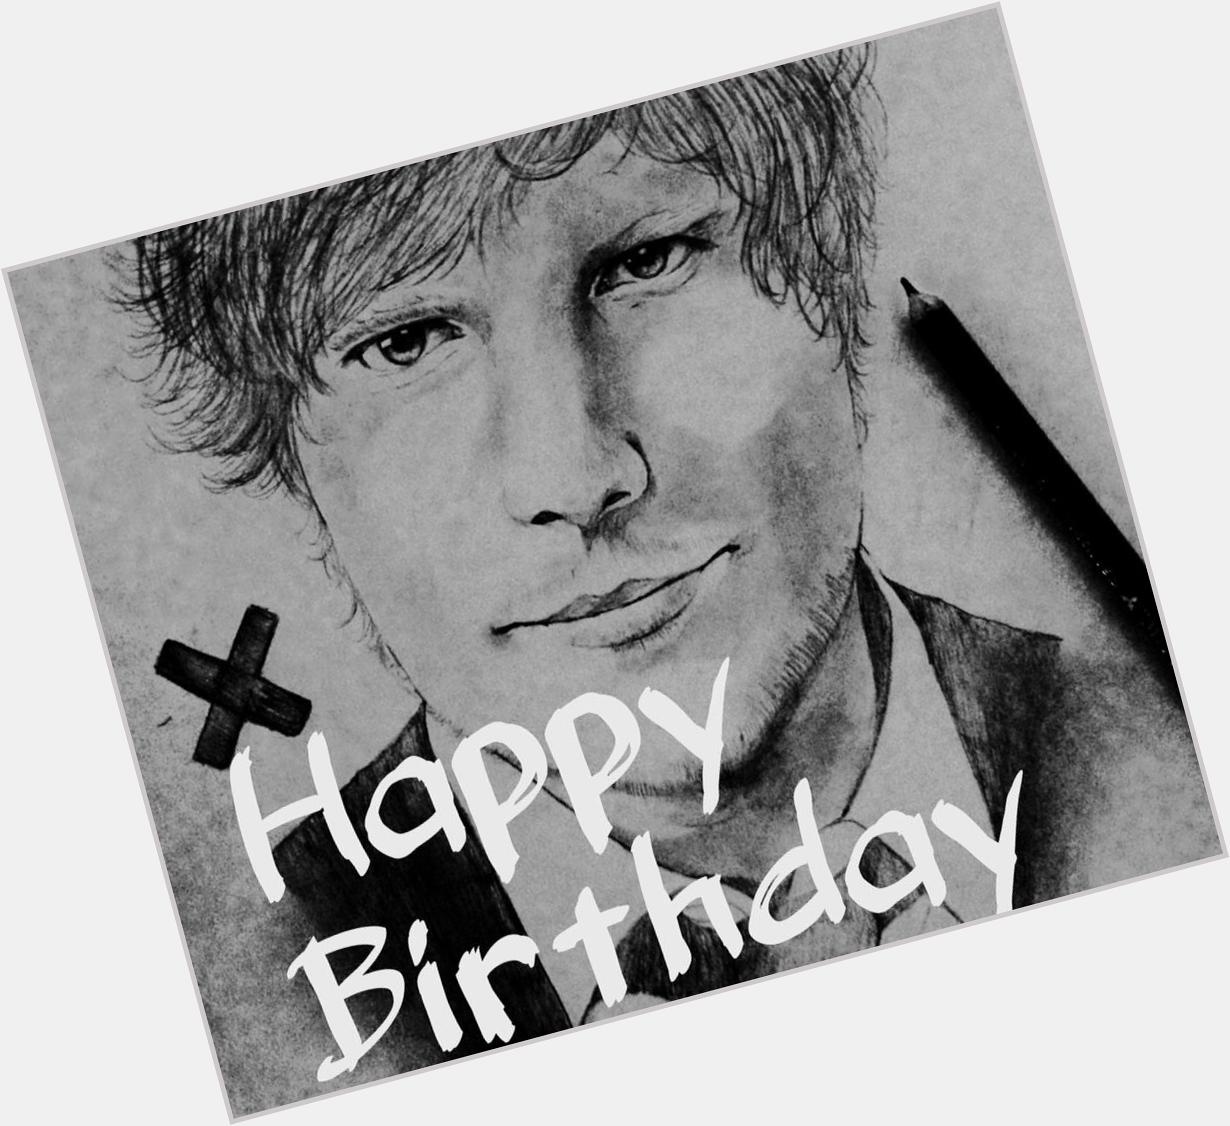  Happy Birthday
Ed Sheeran!! I drew the Ed! Ed               